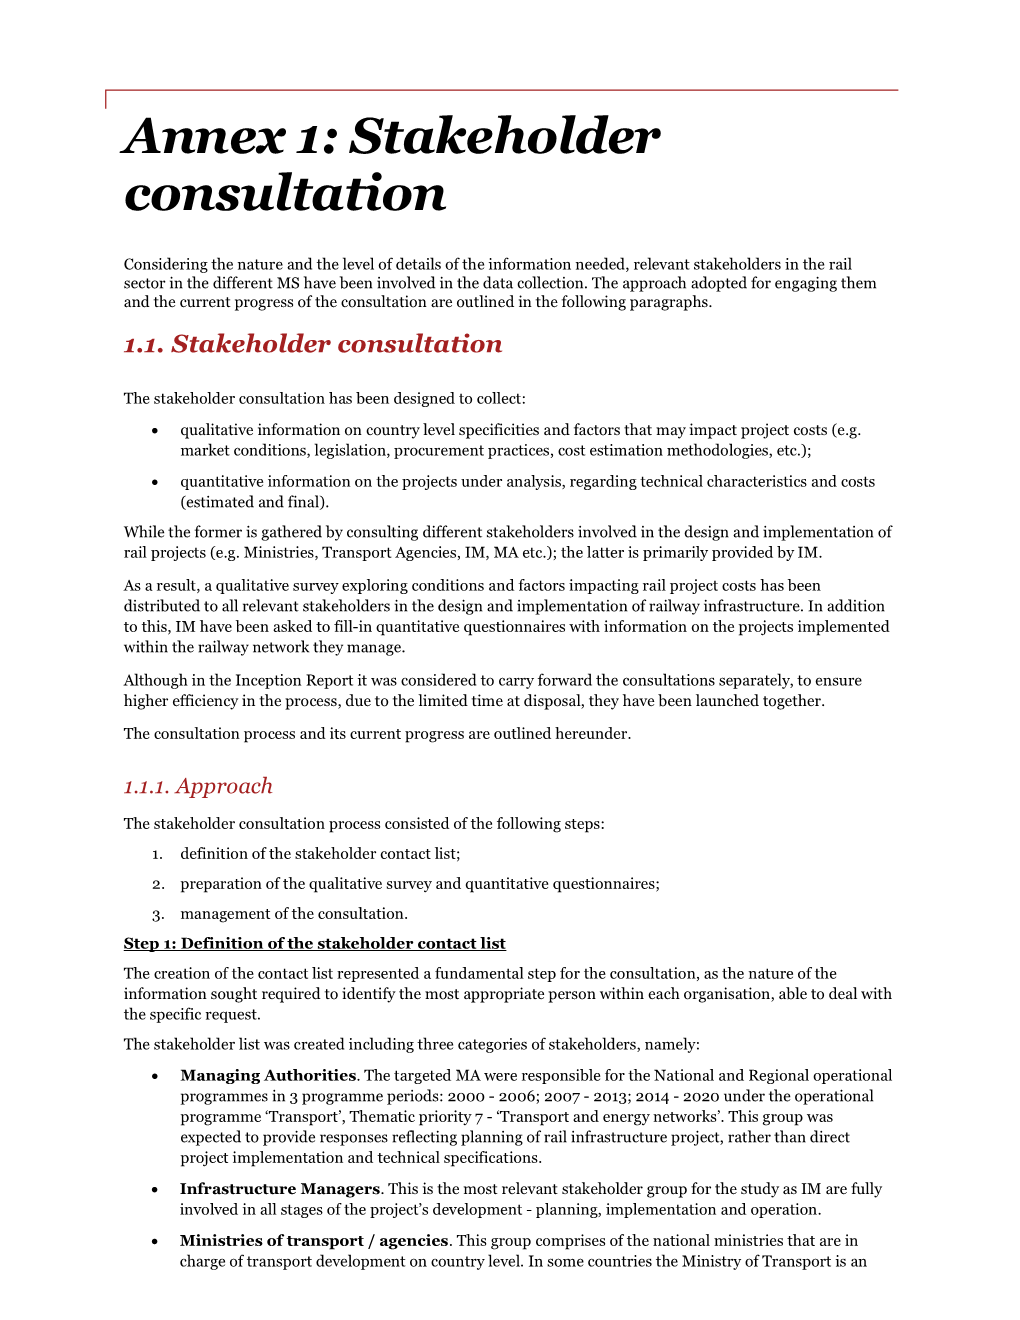 Annex 1: Stakeholder Consultation